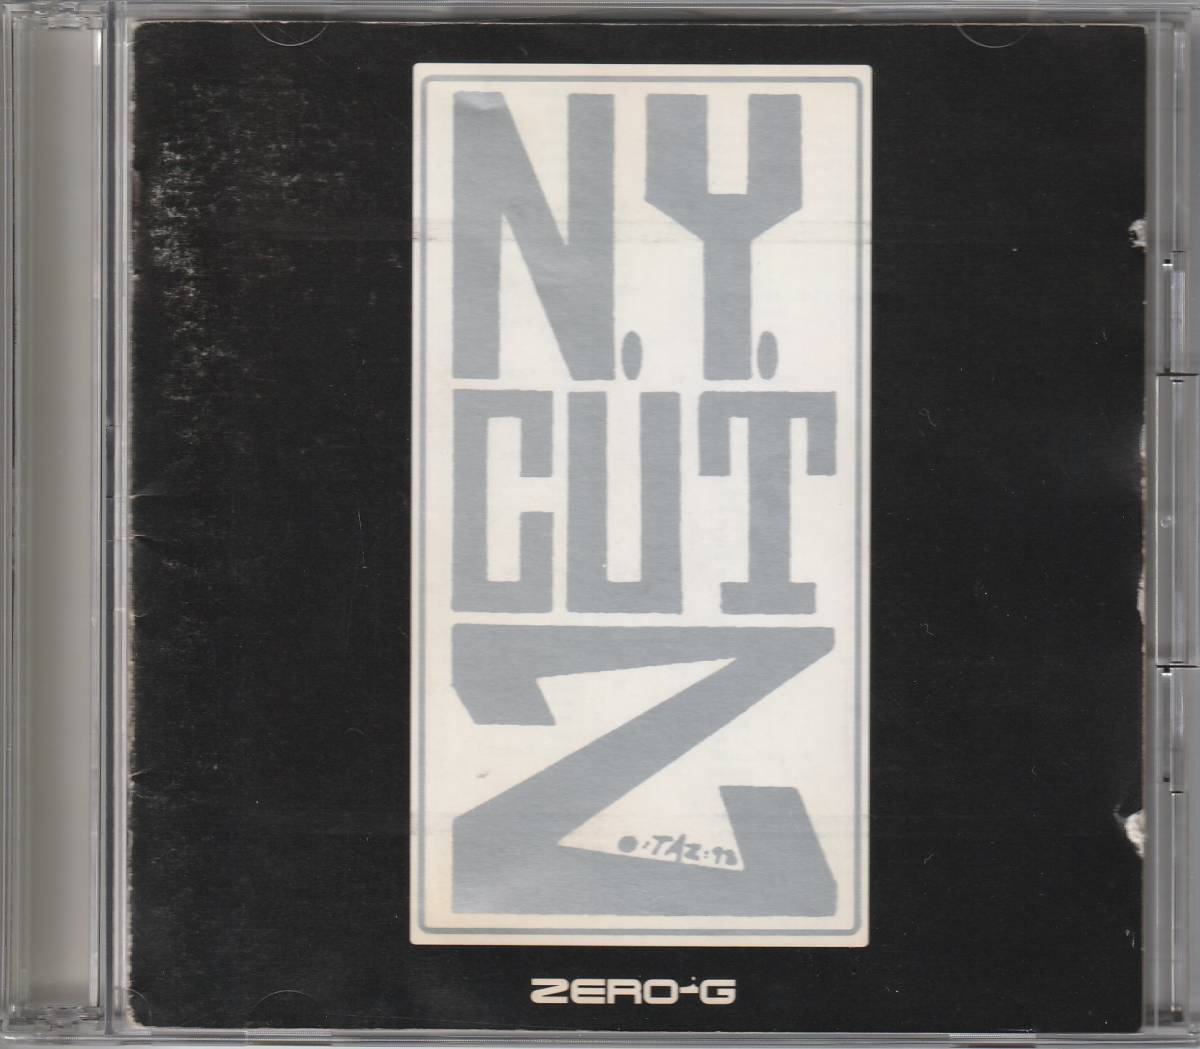 CD SAMPLING ZERO-G / N.Y. CUTZ / 2枚組 / HIPHOP サンプリング アンダーグラウンドヒップホップ ブレイクビーツ